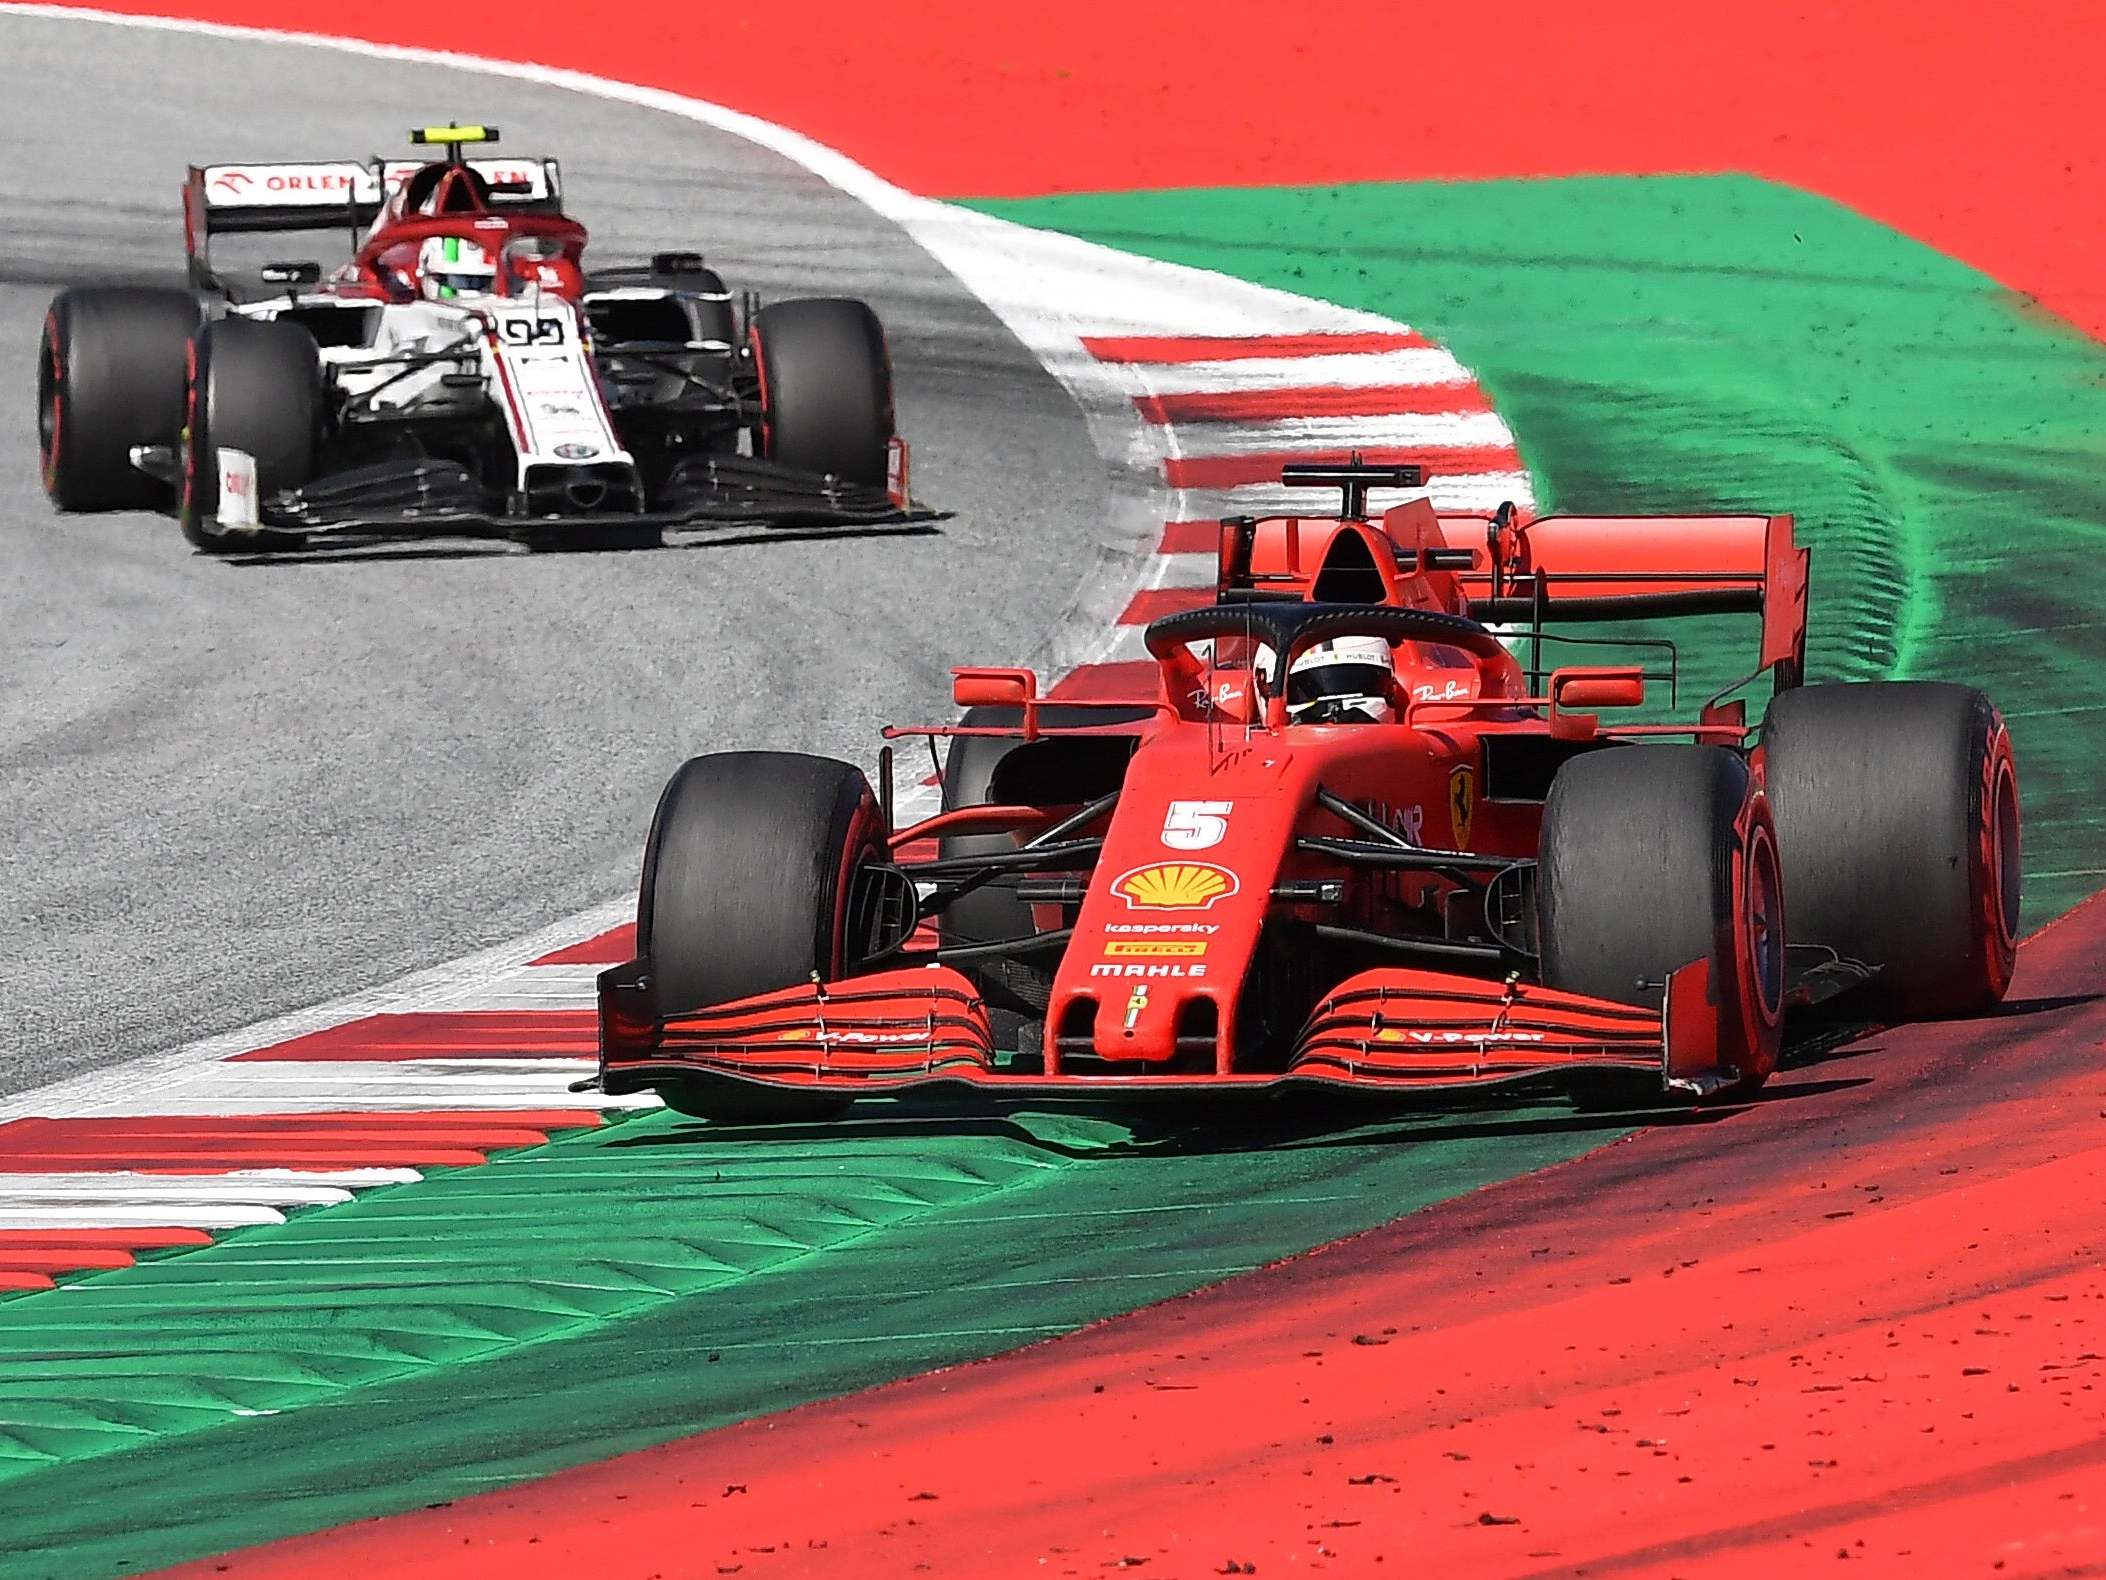 Ferrari struggled to keep pace in Austria